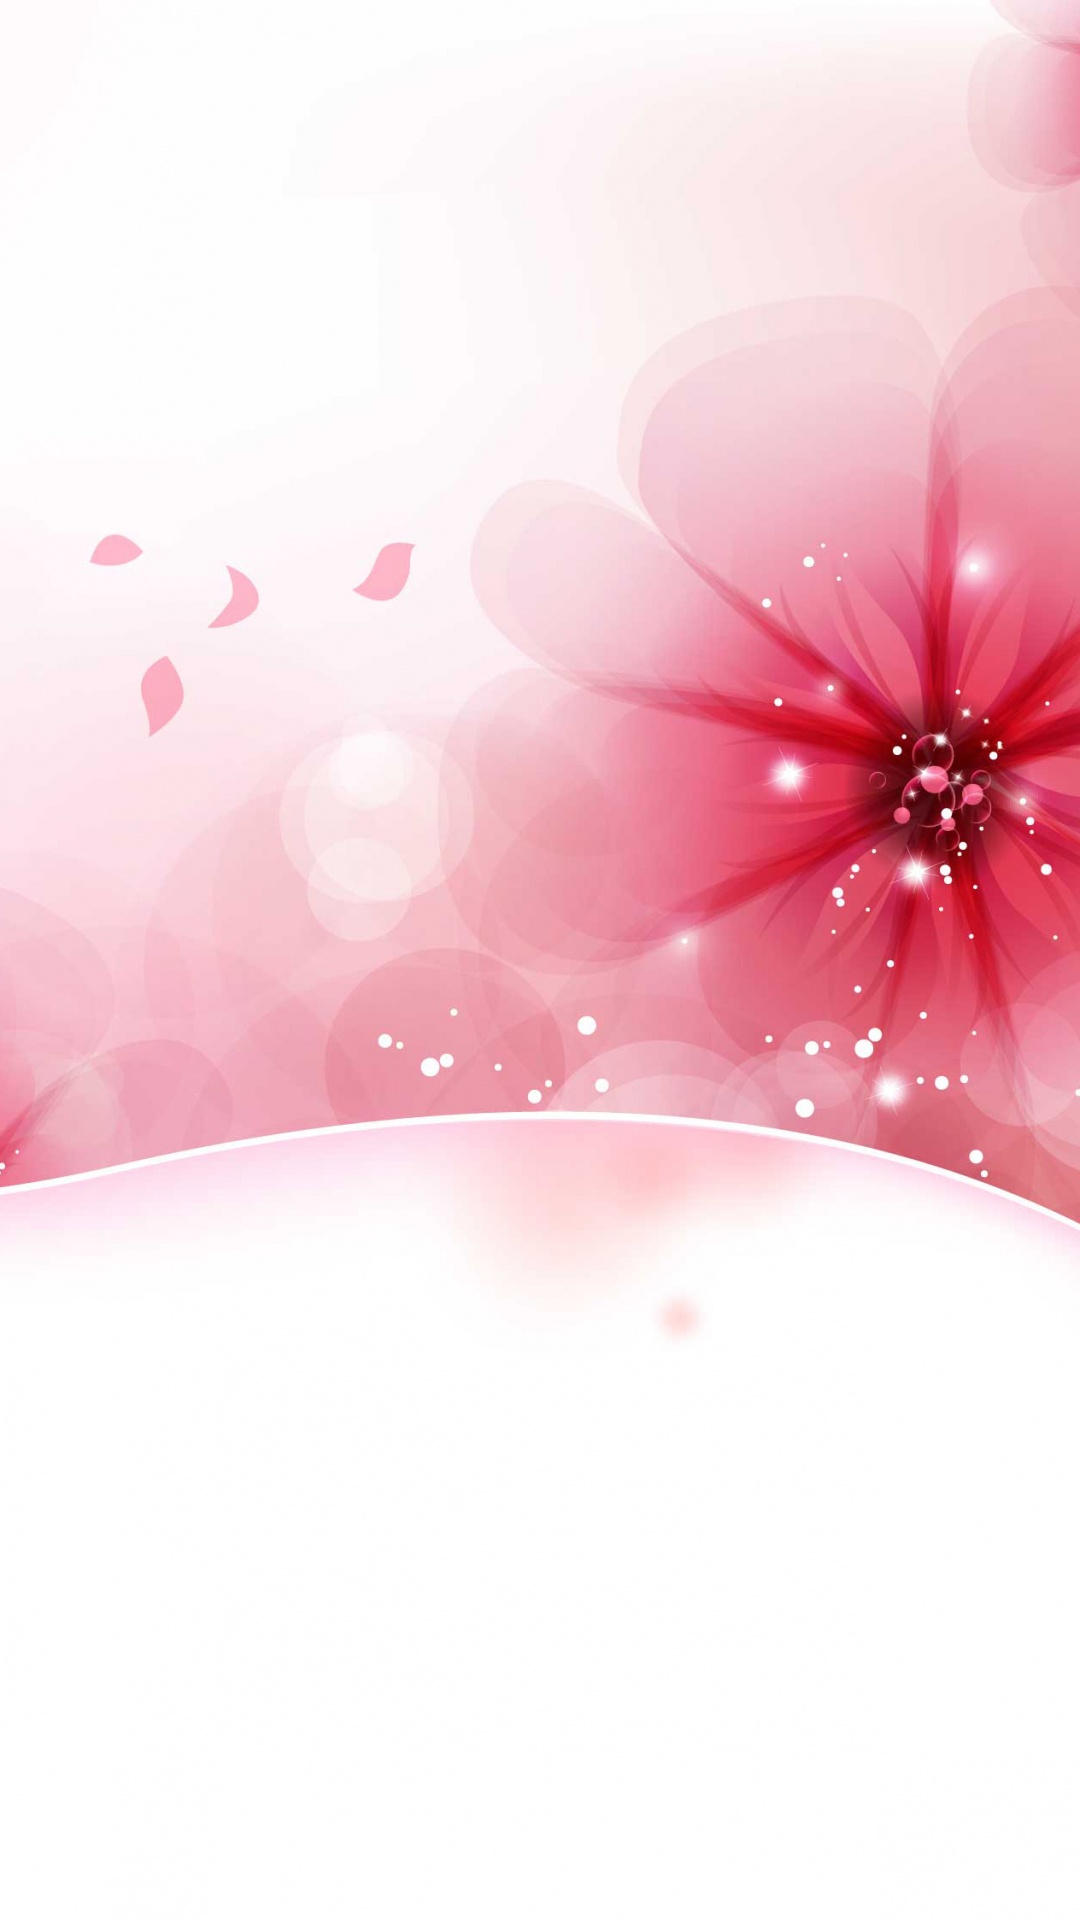 颜色, 粉红色, 心脏, 开花, 品红色 壁纸 1080x1920 允许